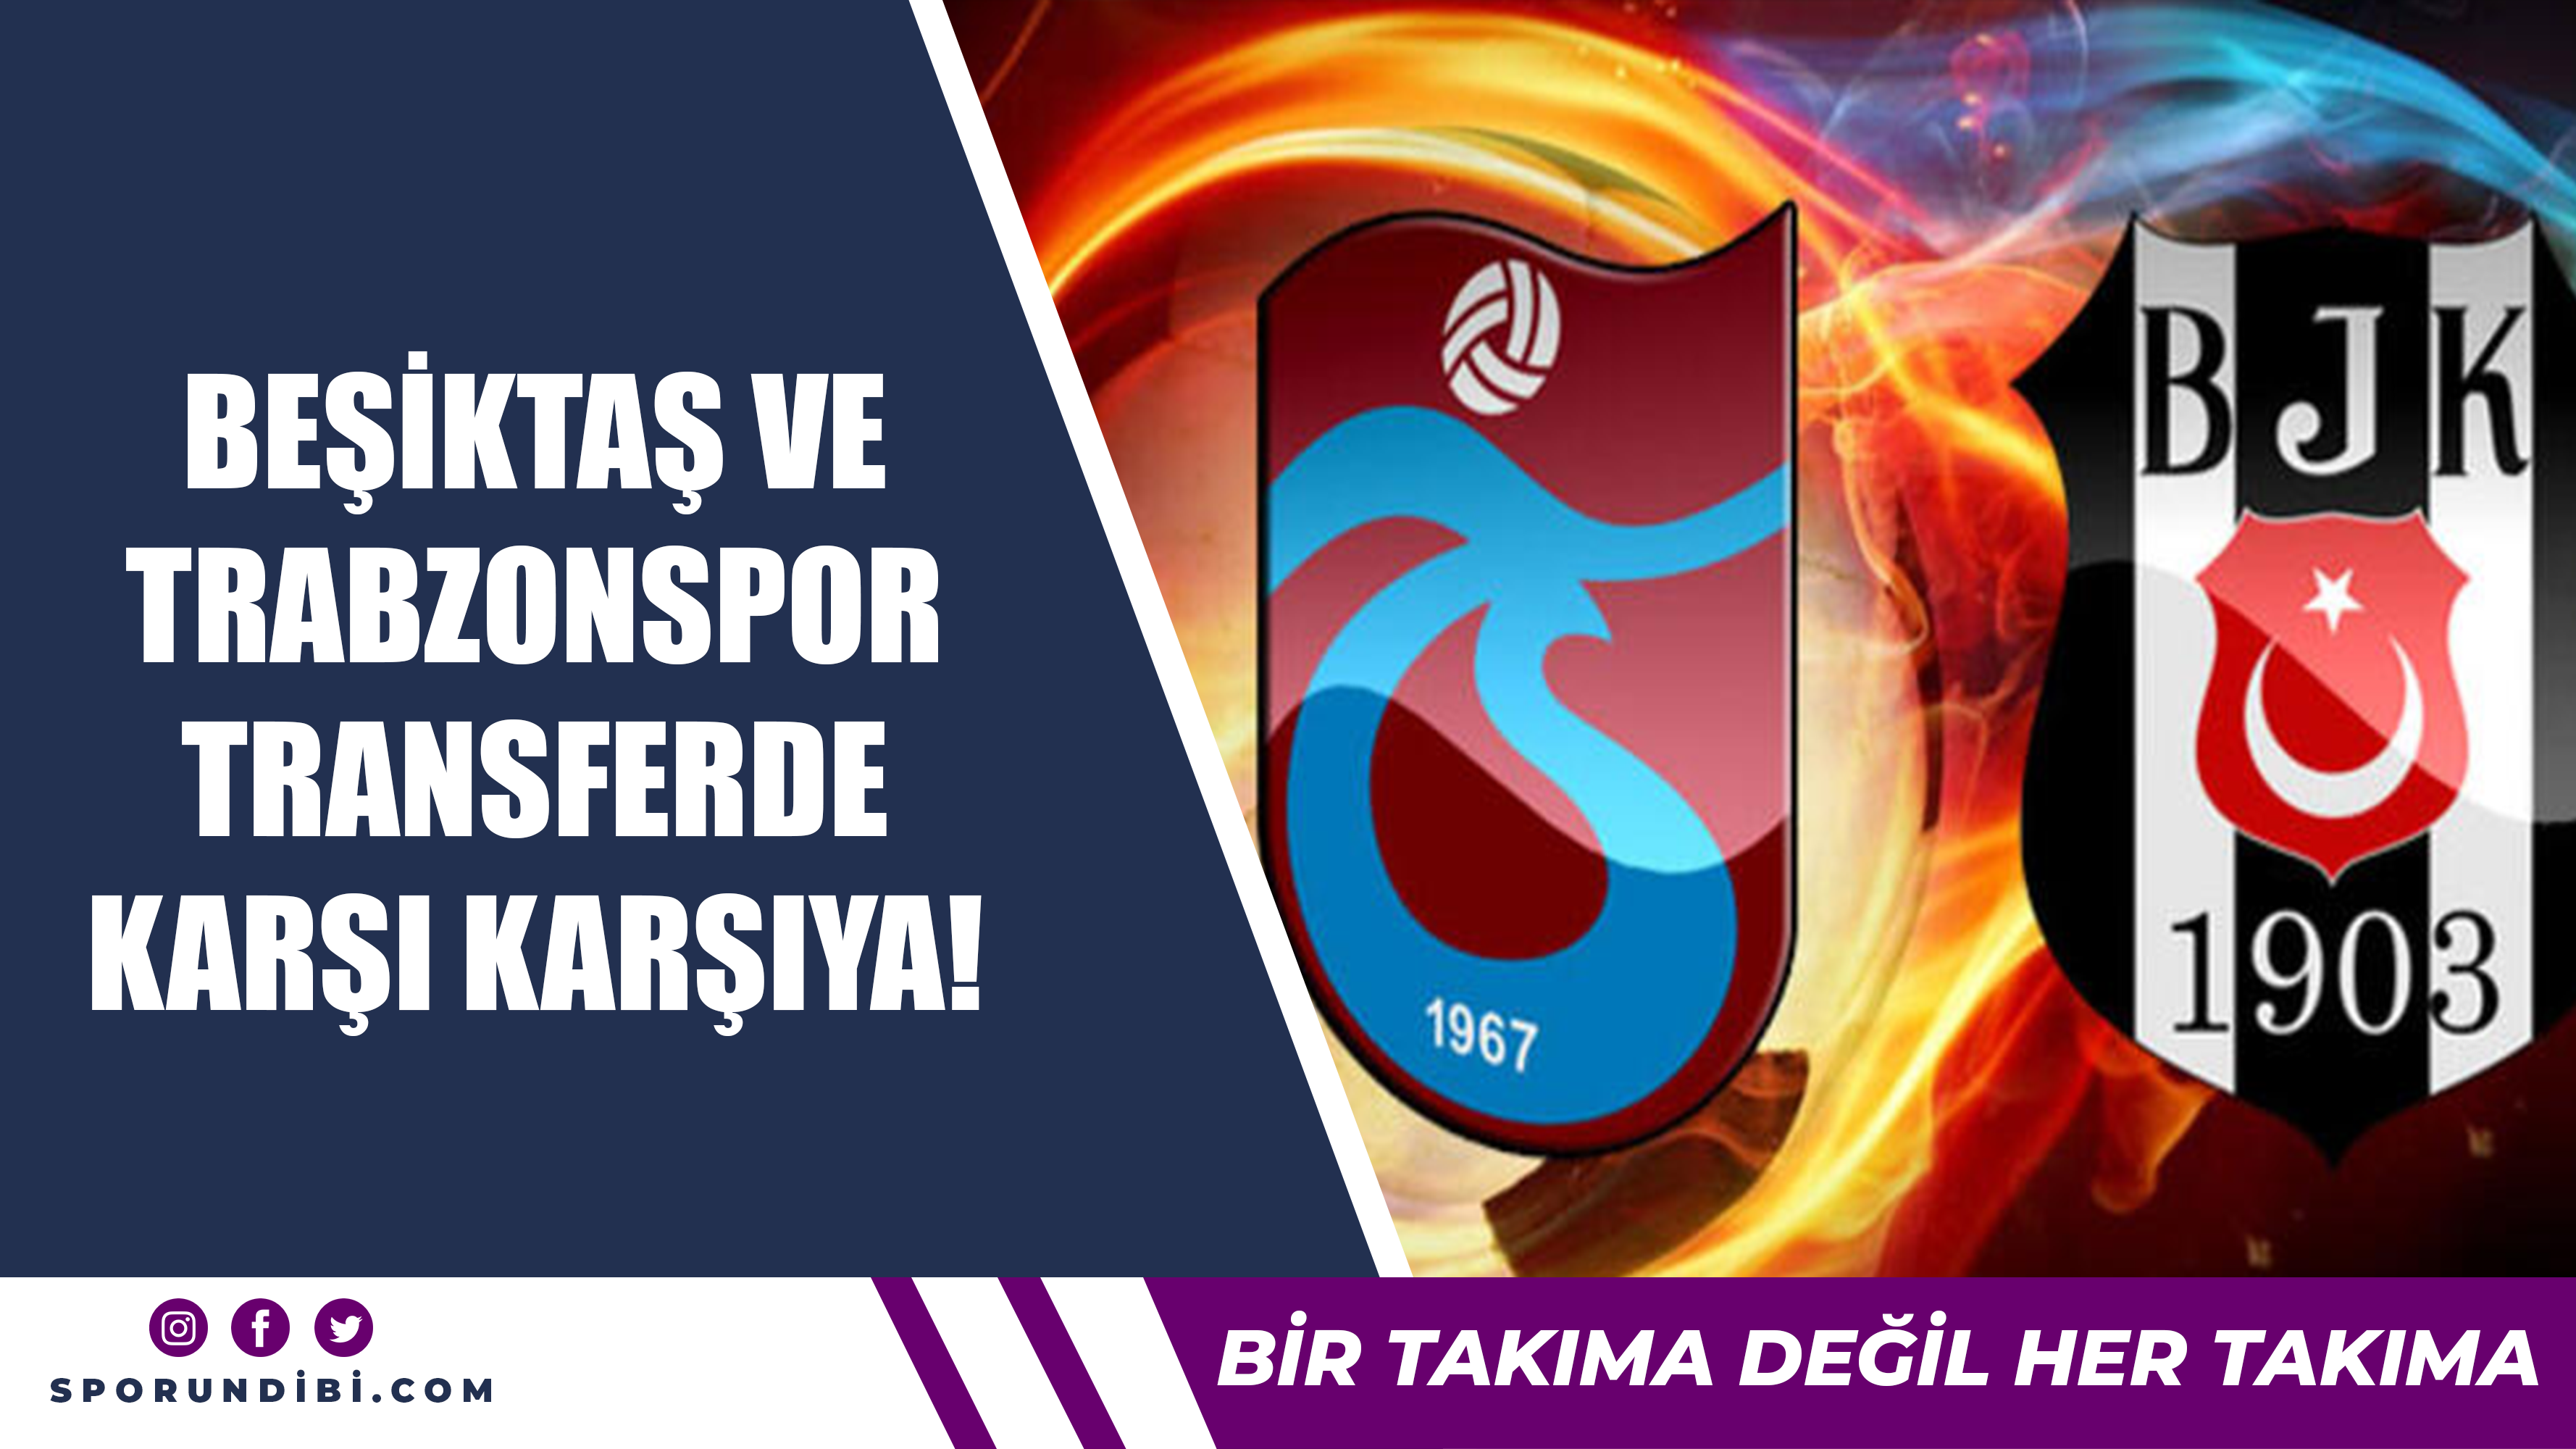 Beşiktaş ve Trabzonspor transferde karşı karşıya!